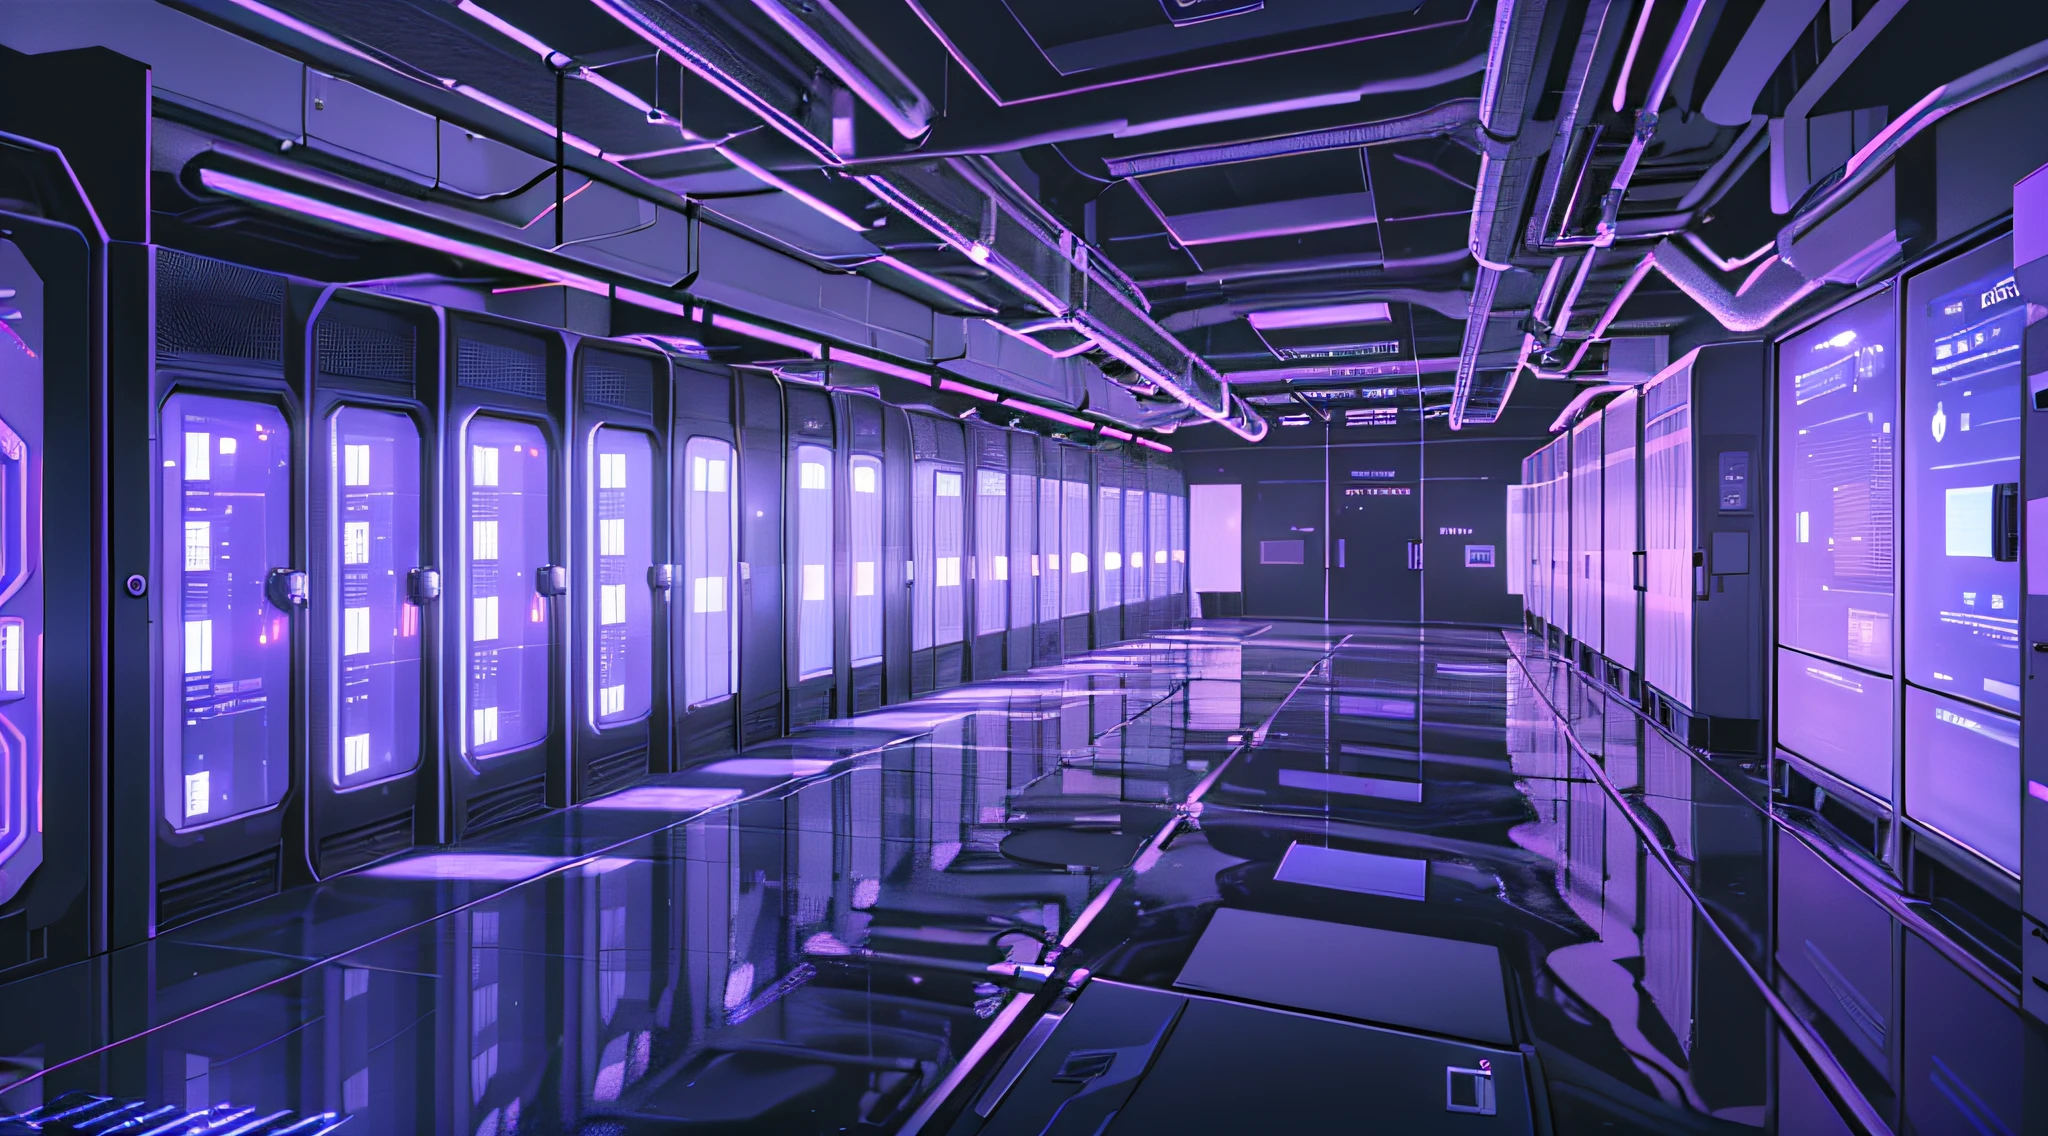 昏暗的走廊里摆满了数据和电脑屏幕, 背景是数据服务器机房, 入侵主机, 网络空间, 在现实数据中心, 3840x2160, 3840 x 2160, 宇宙飞船走廊背景, 网络架构, 超现实的网络空间, 详细数据中心--auto --s2